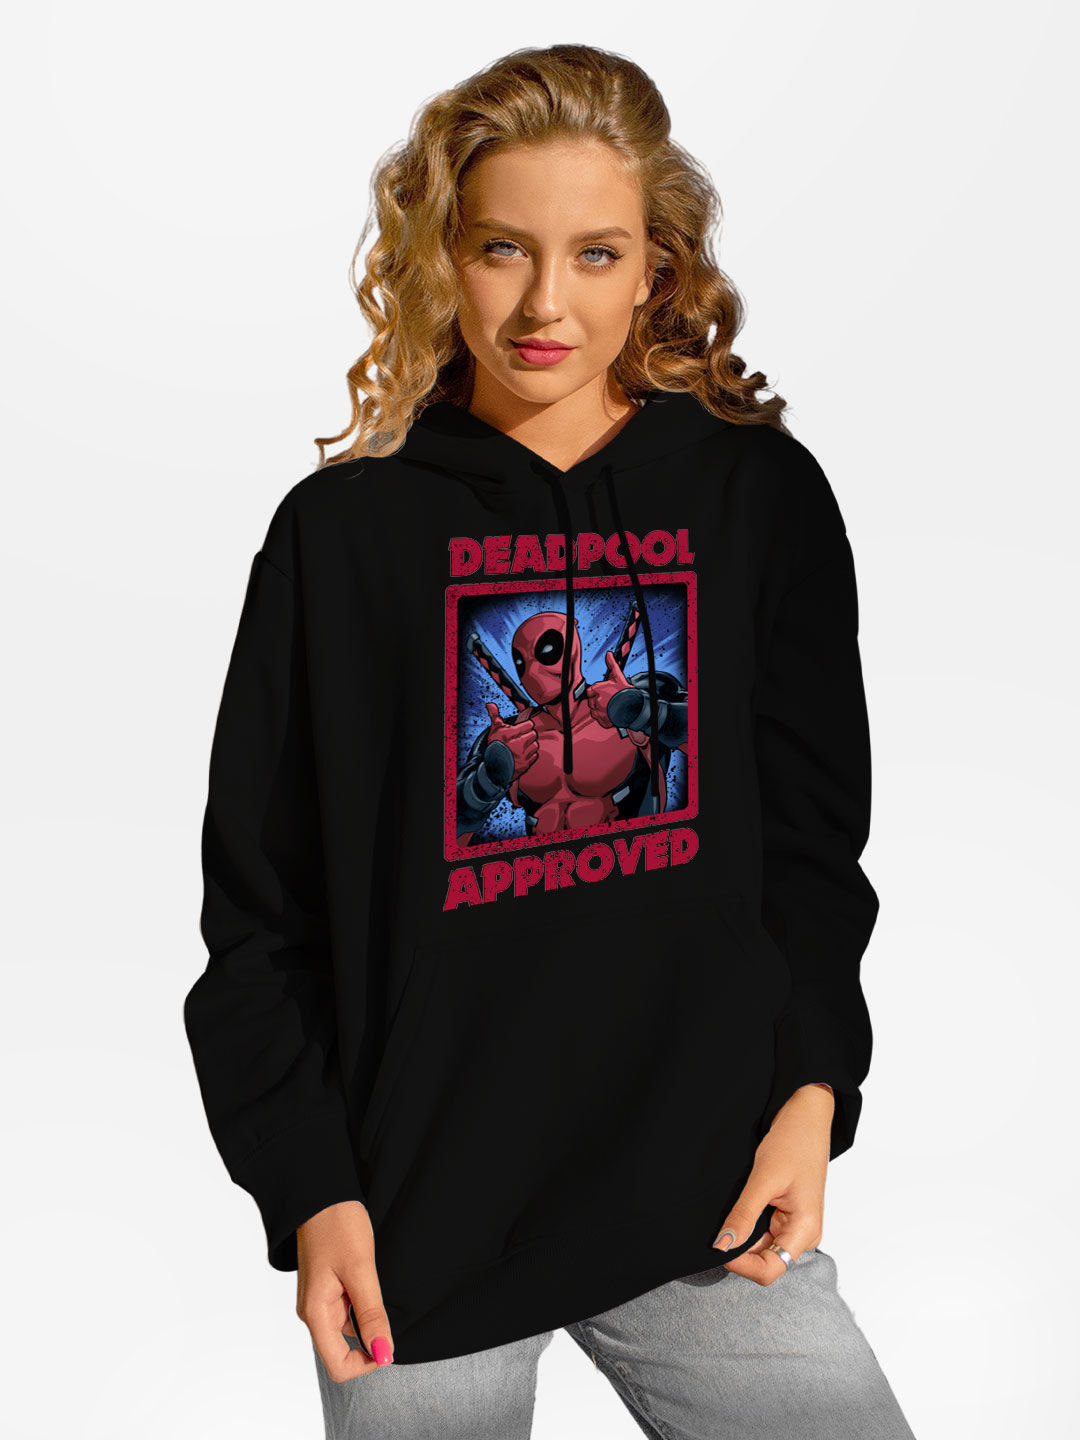 Buy Deadpool Approved - Hoodie Hoodies Online